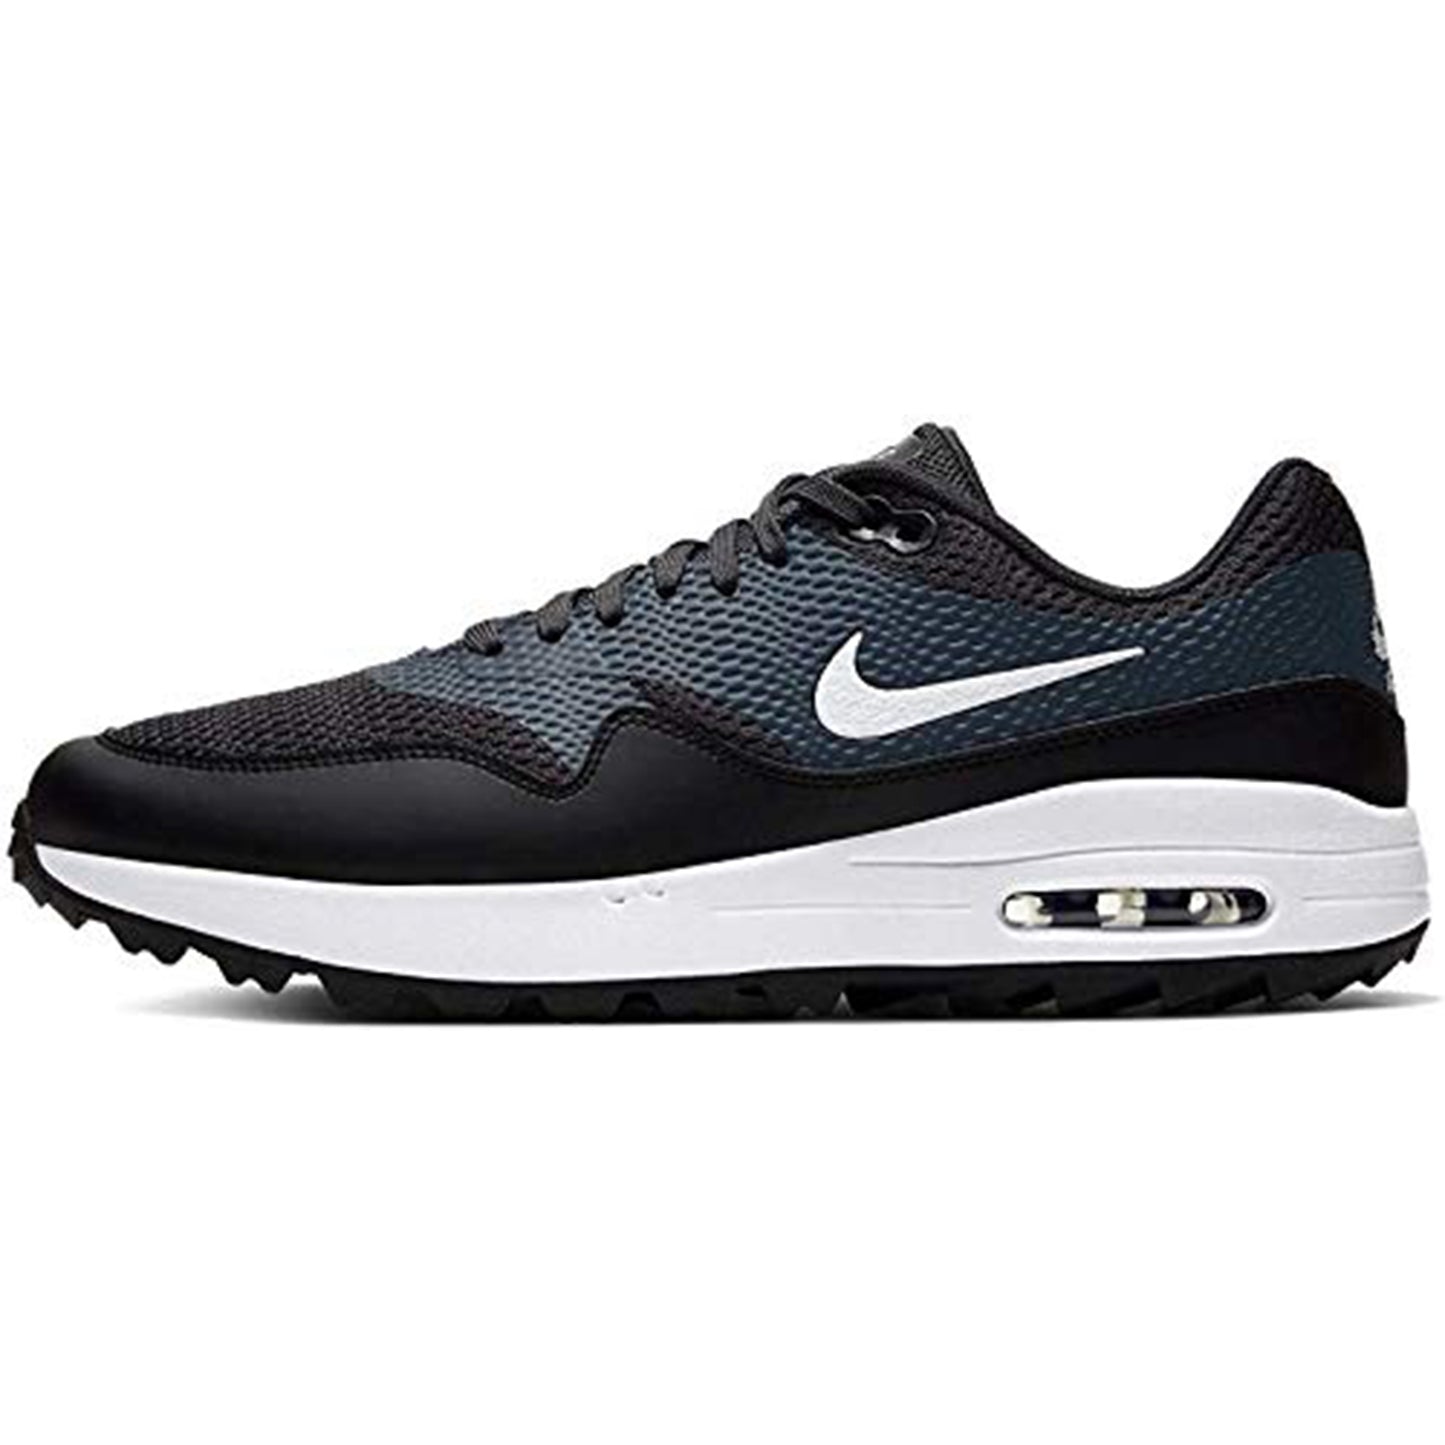 Nike Air Max 1 G Mens Golf Size 7 - Ci7576-001 Black/White